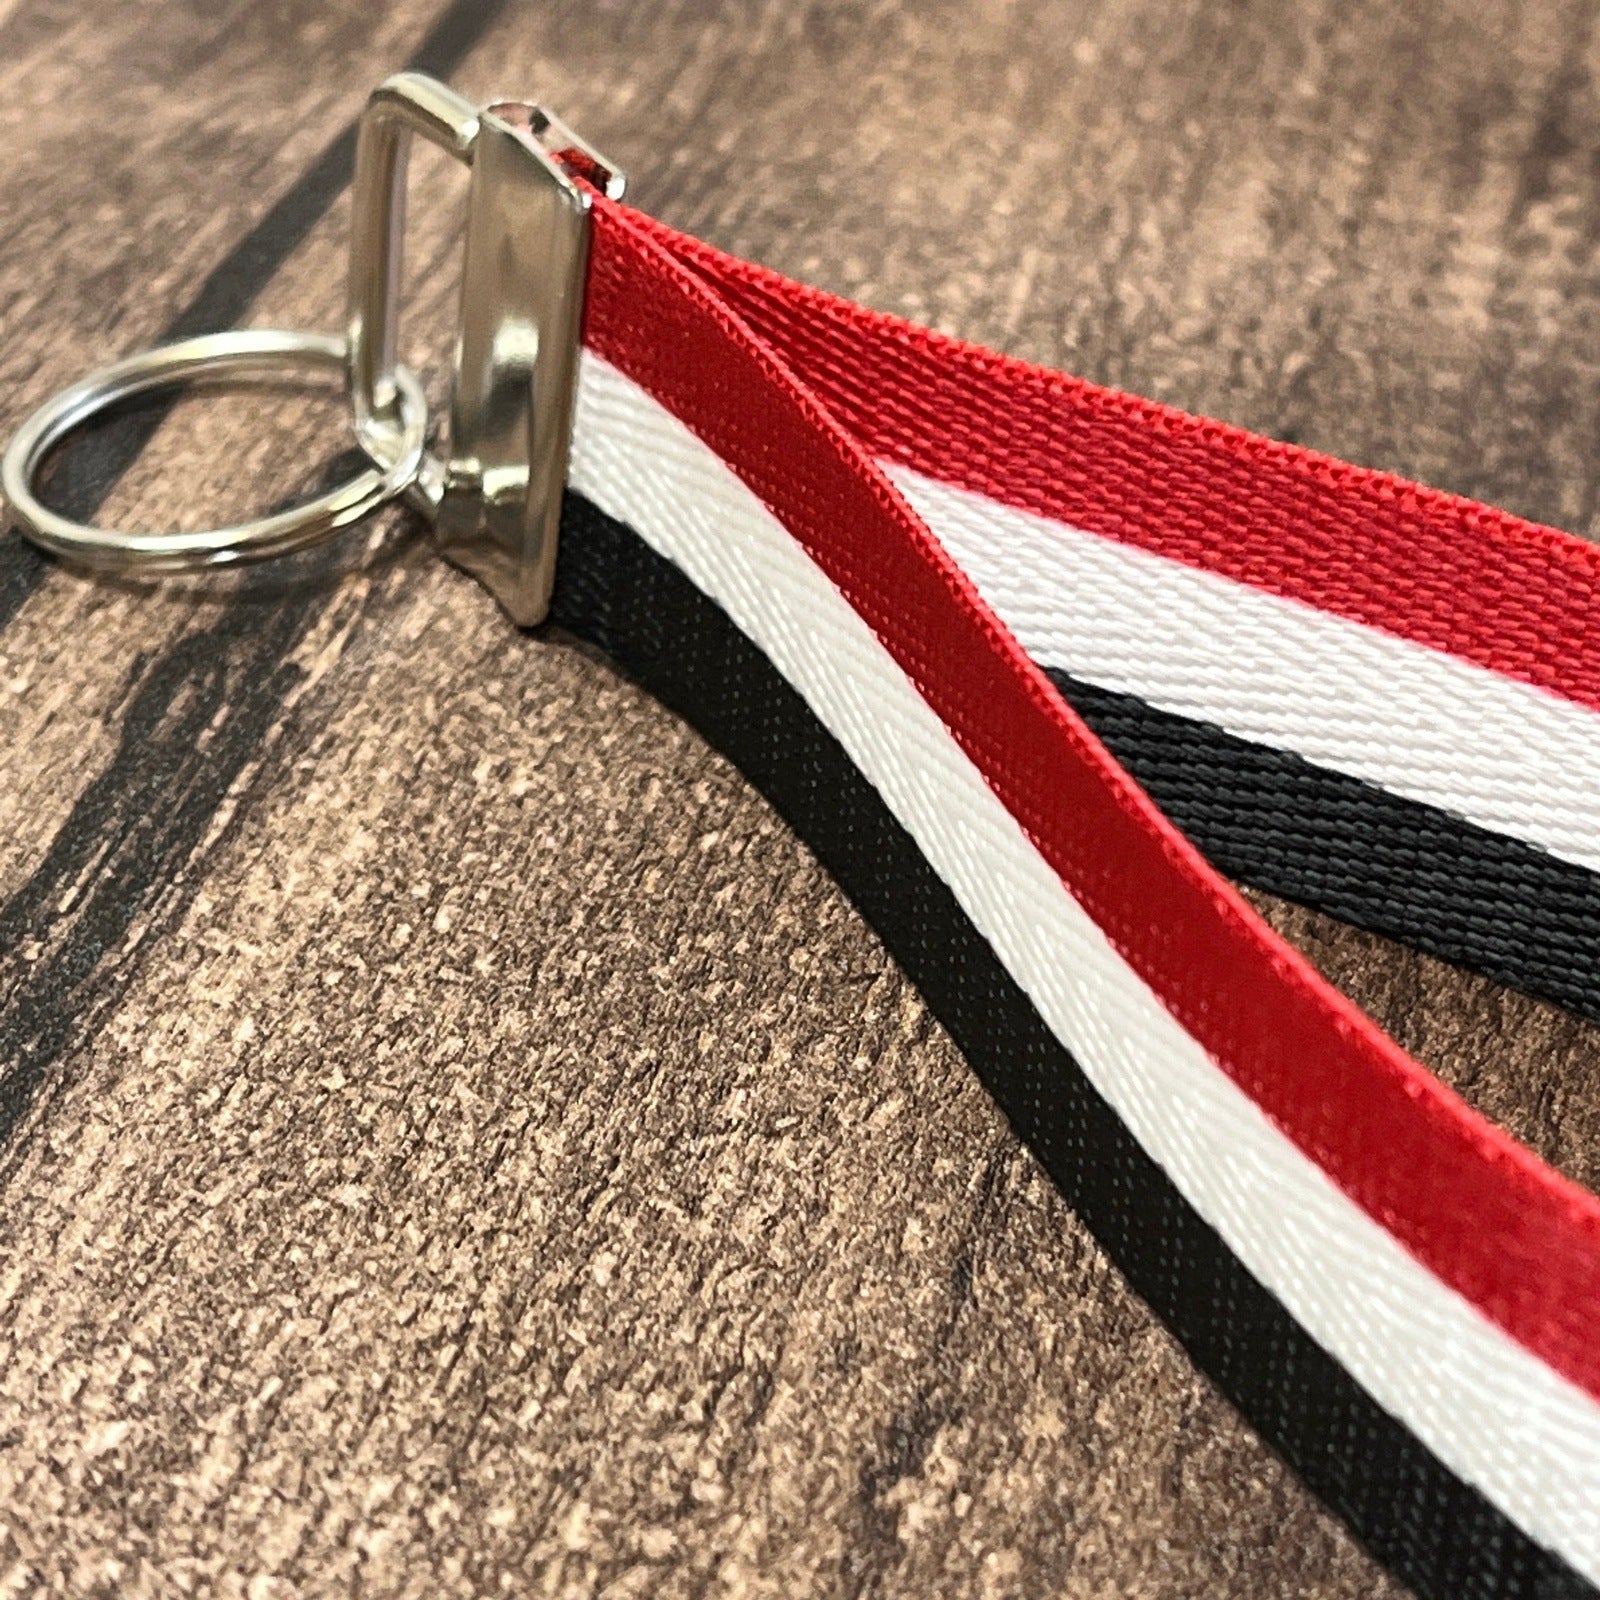 Yemen Flag Personalized Name Nylon Key Fob - Custom Wristlet Keychain